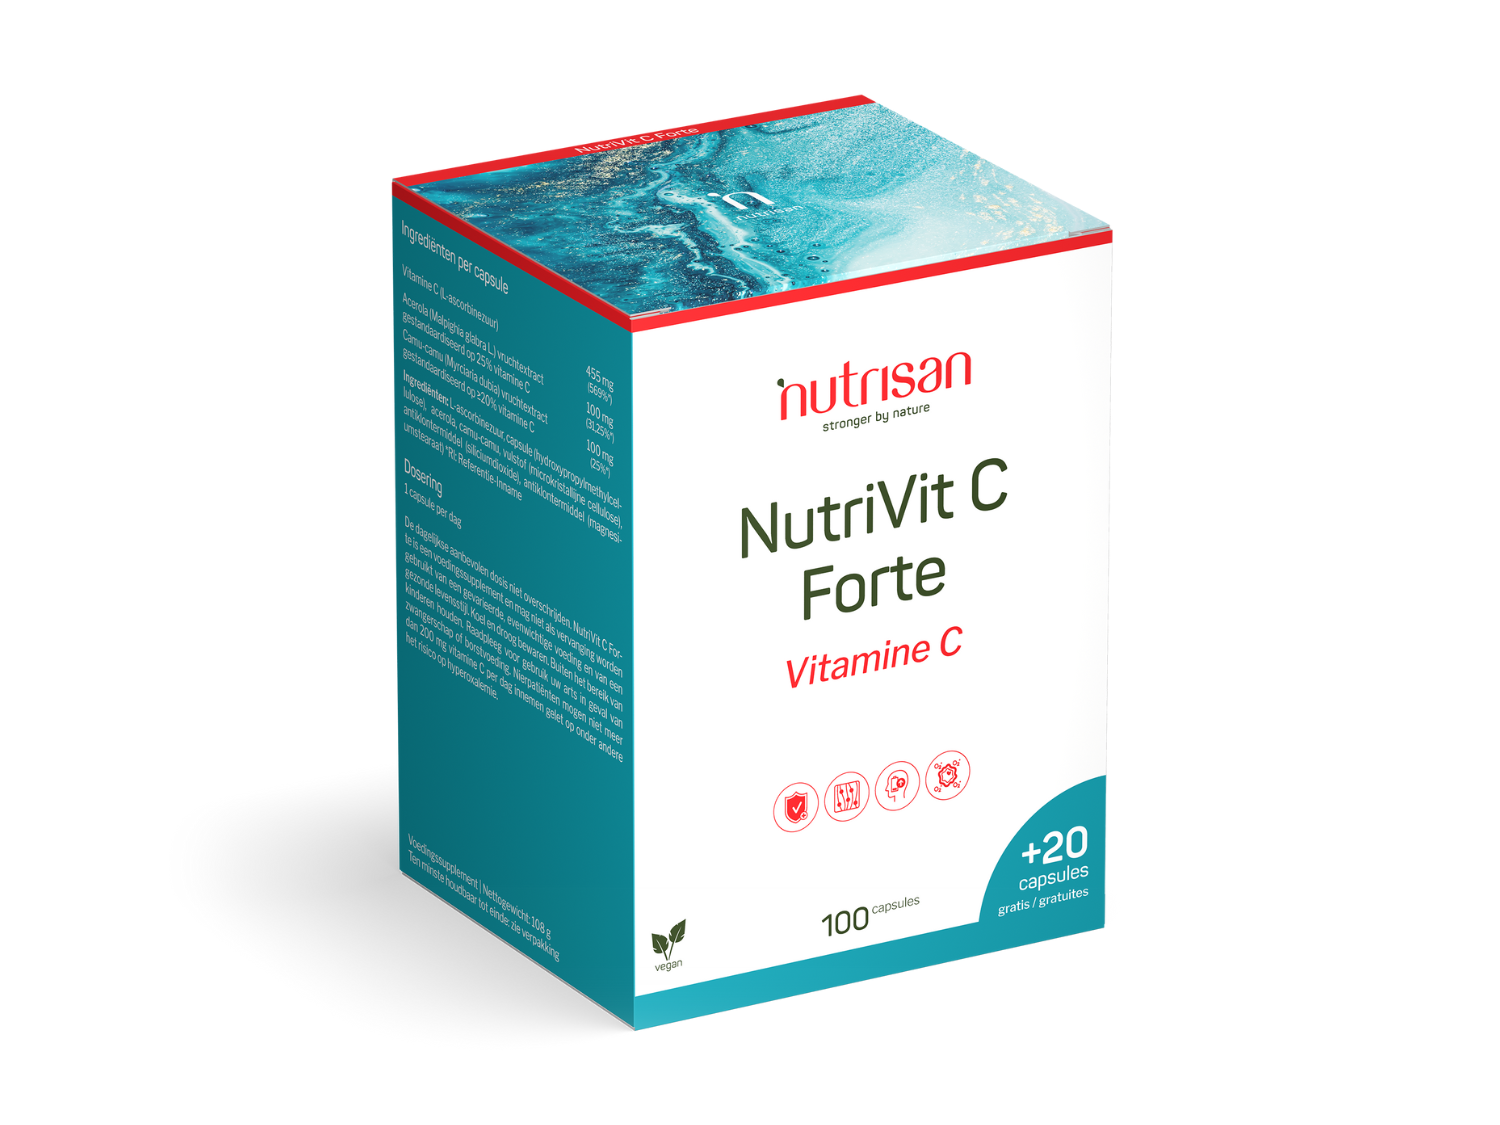 NutriVit C Forte - 100 + 20 gratis caps 